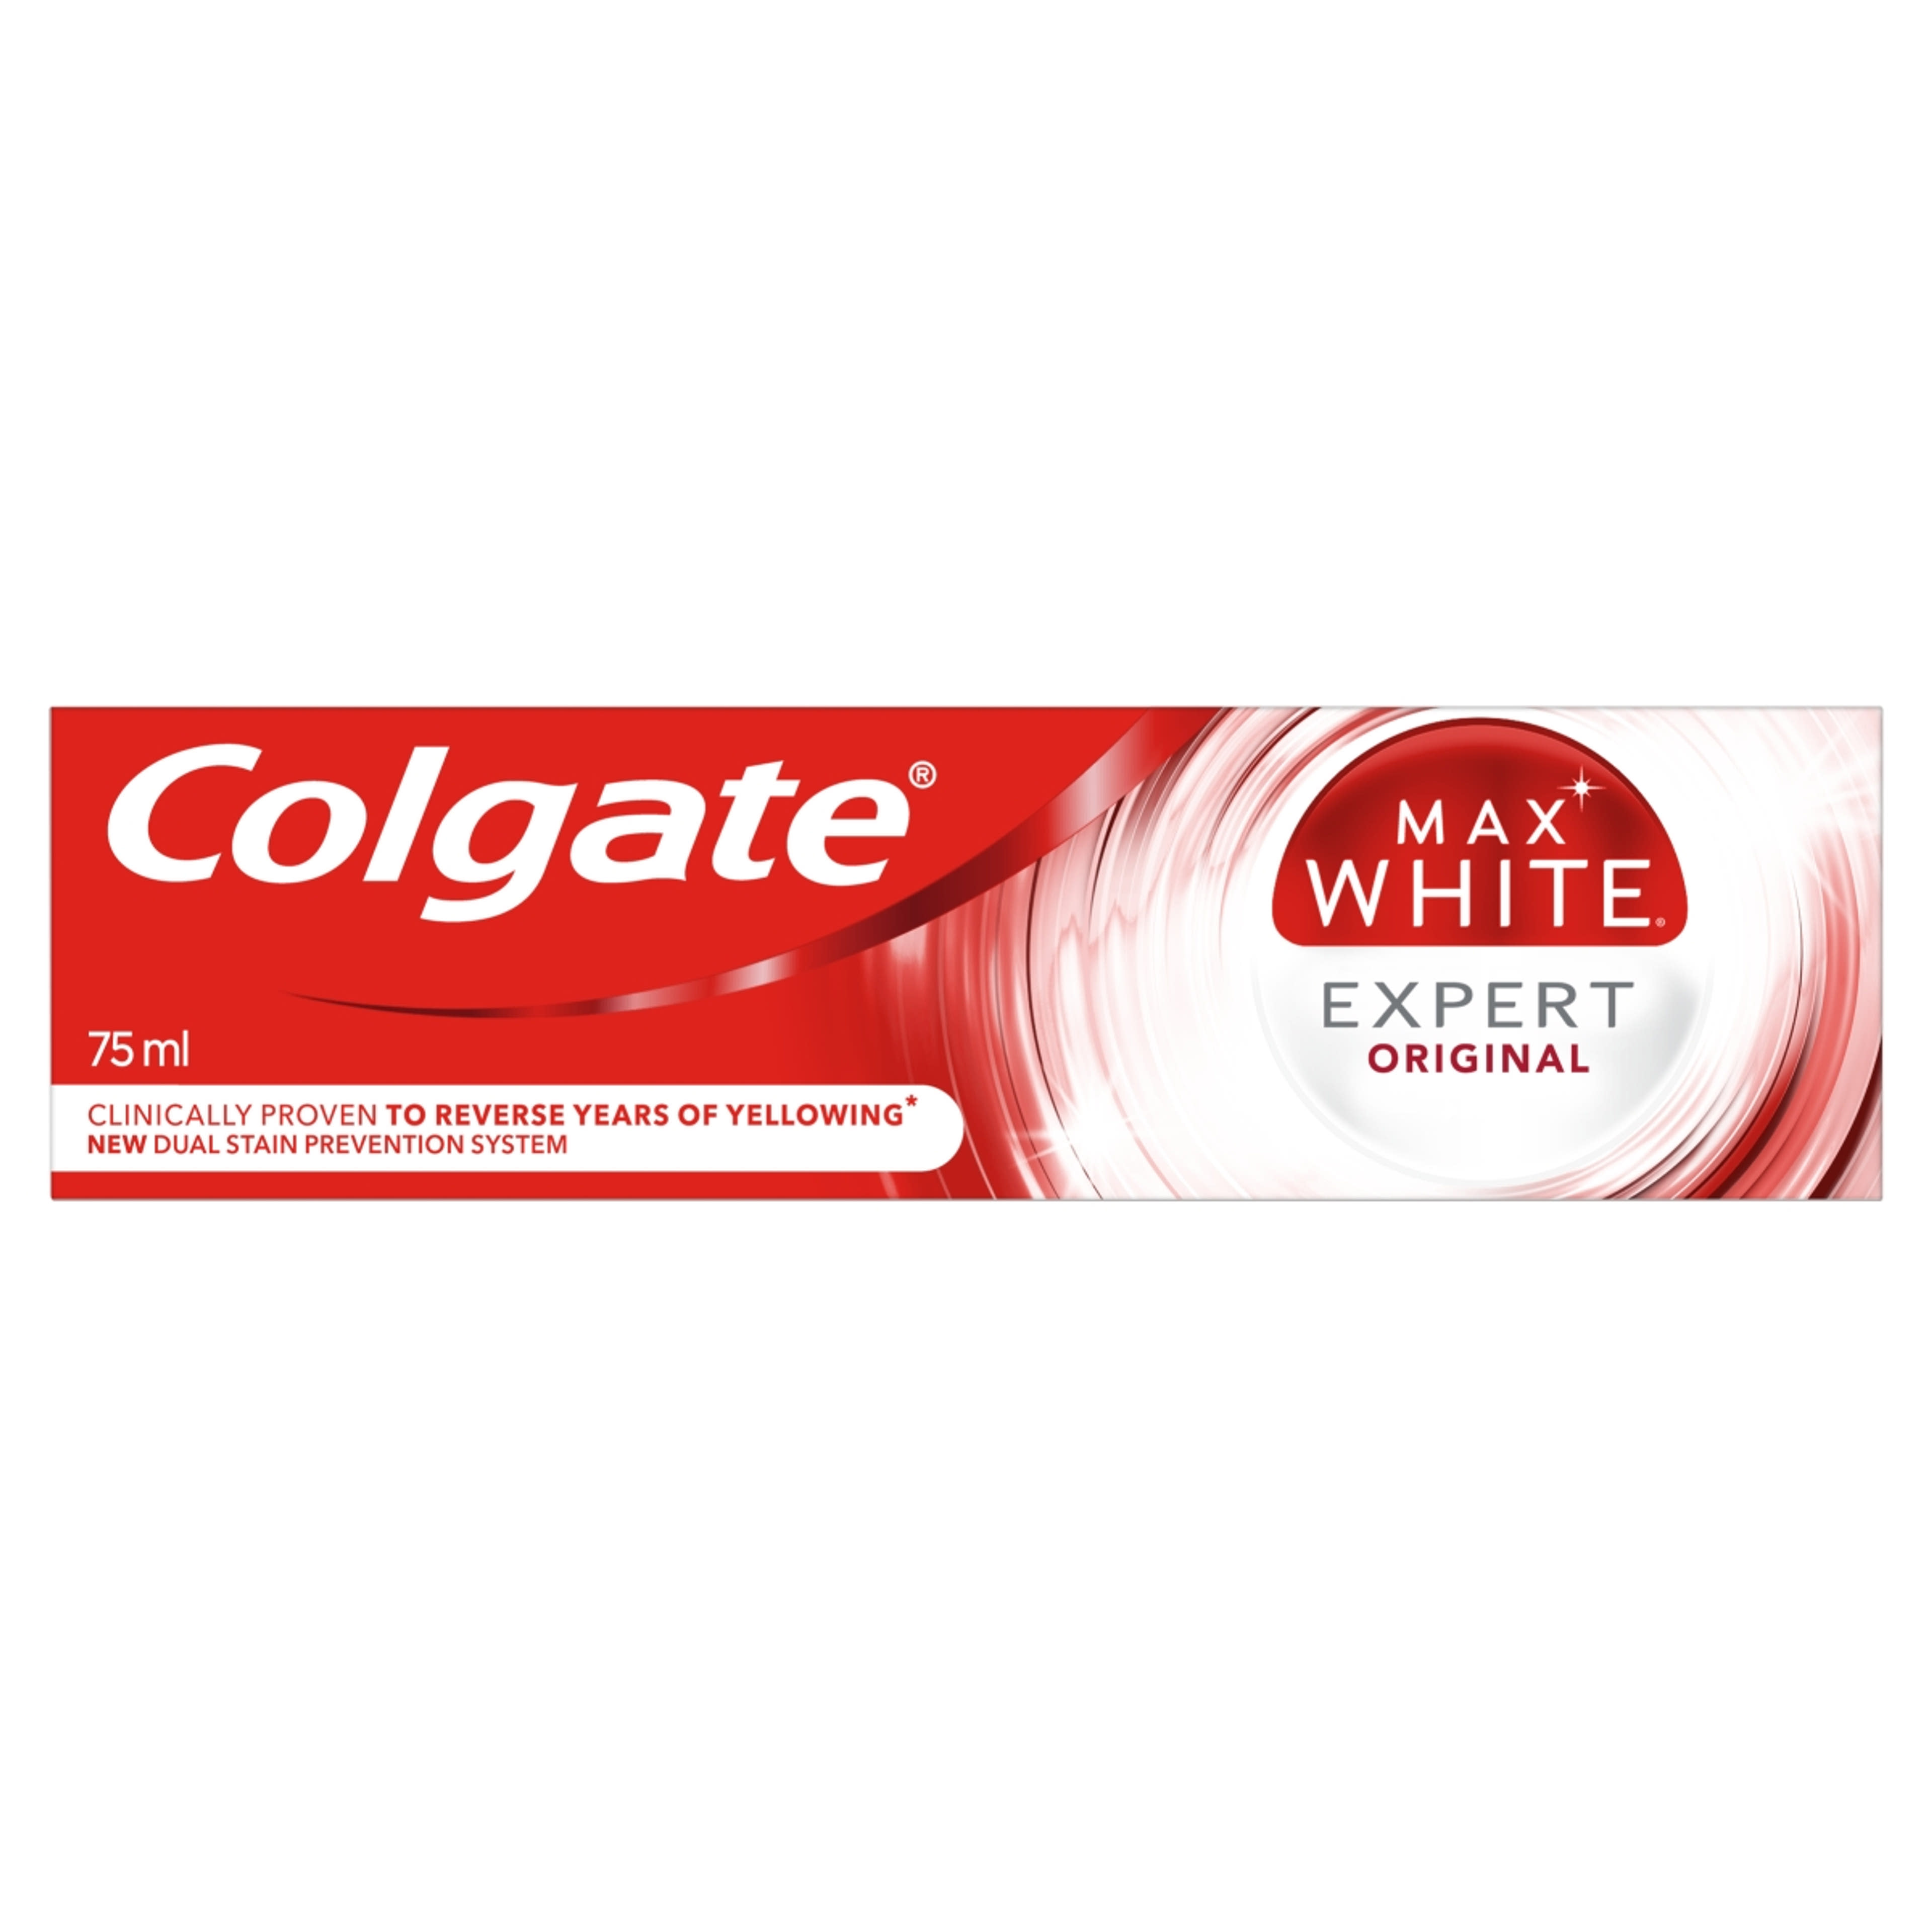 Colgate Max White Expert Original fogkrém - 75 ml-5